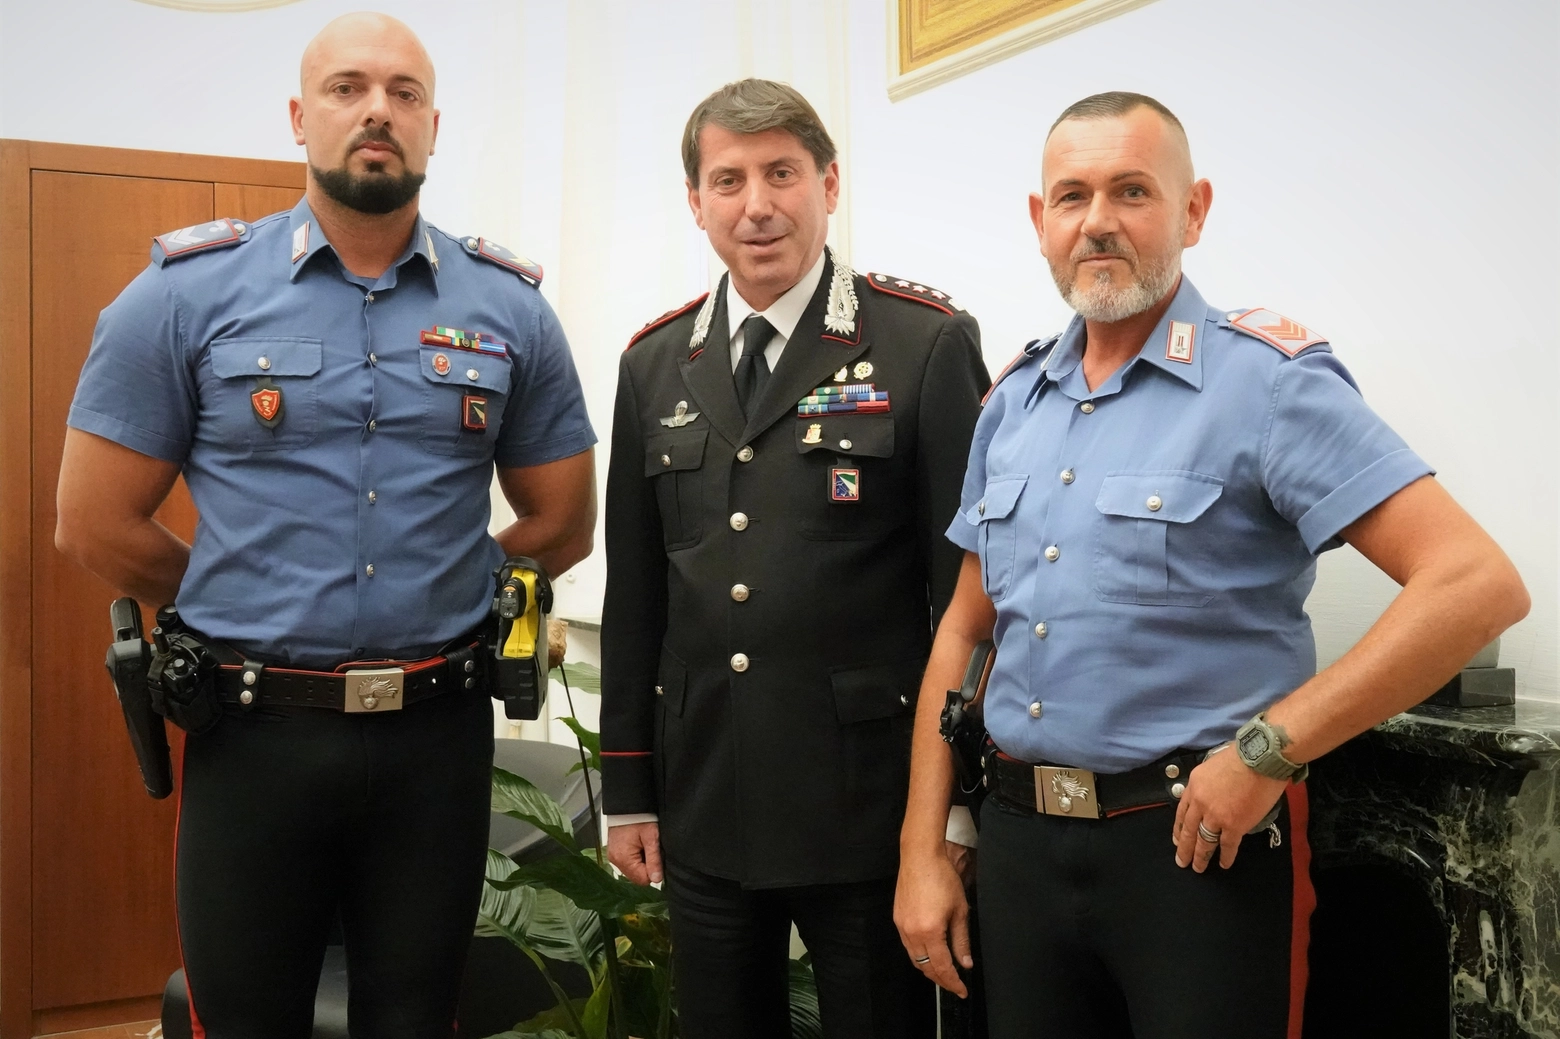 Da sinistra il vice brigadiere Mattia Ciaffoni, il colonnello Ettore Bramato - comandante provinciale dei carabinieri di Bologna - e l'appuntato scelto Q.S. Francesco Cruciani